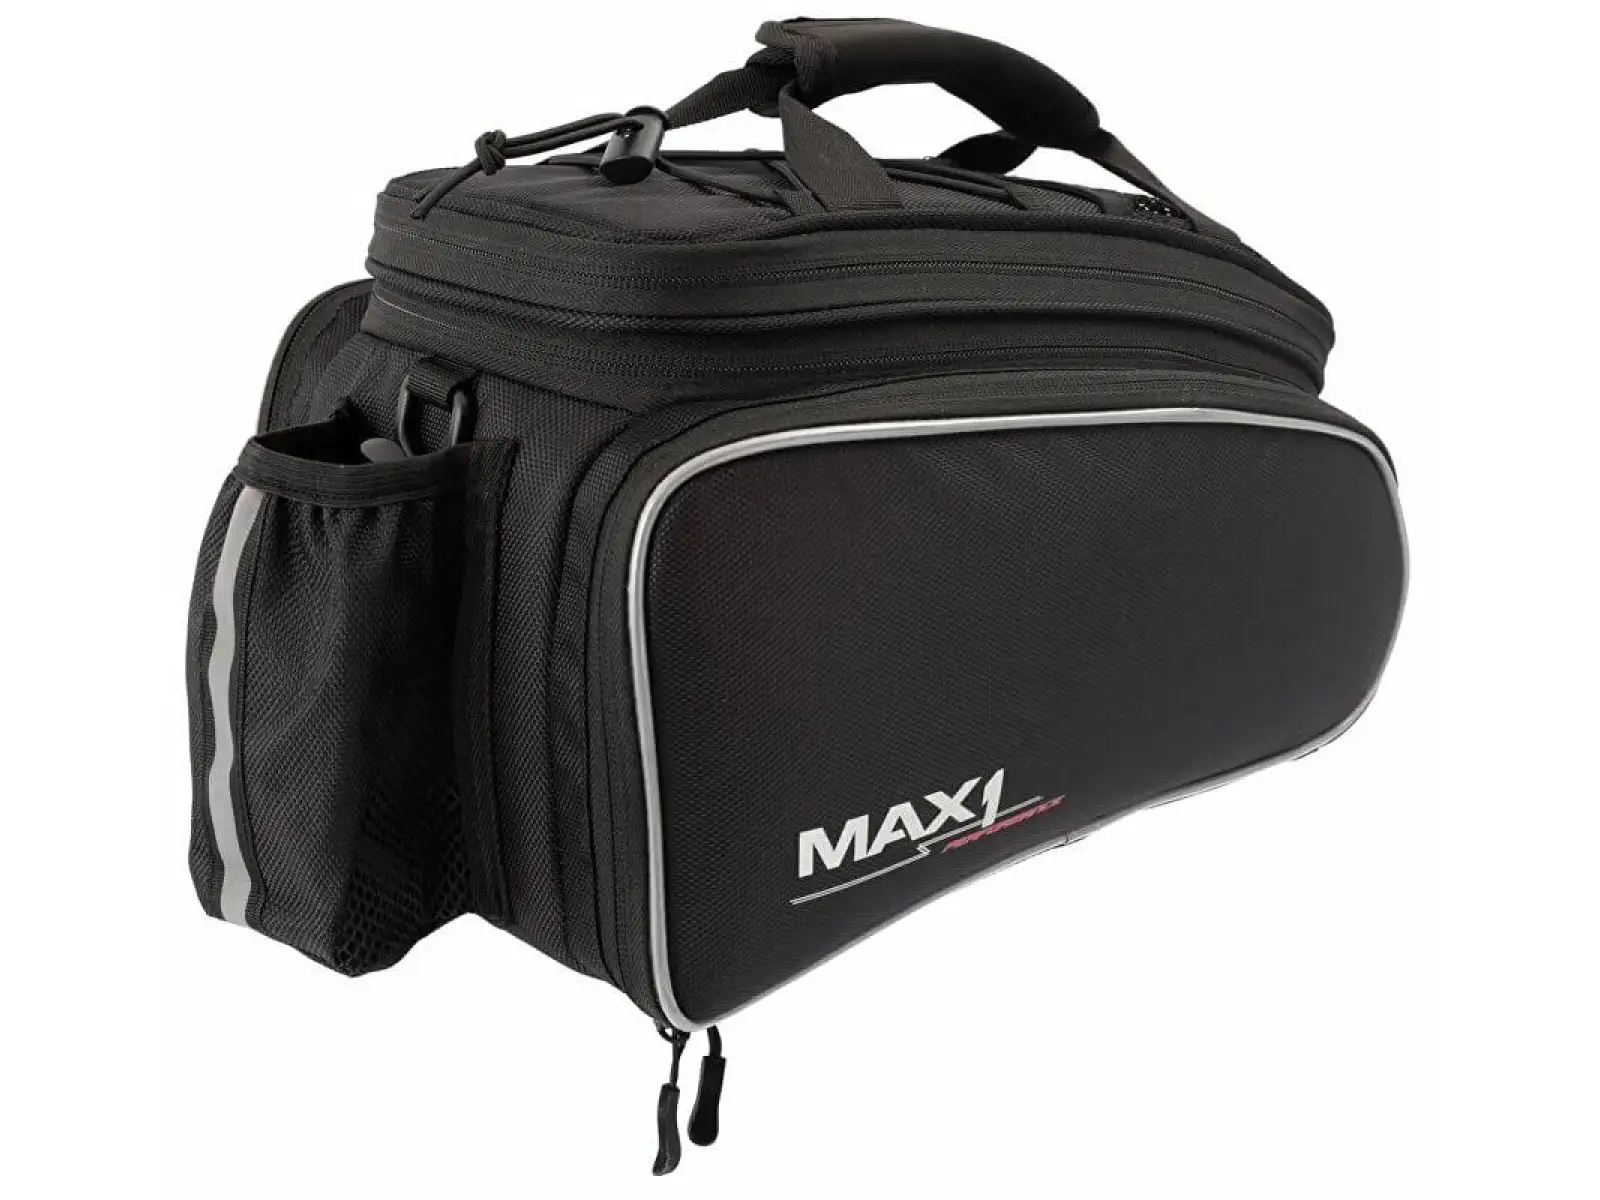 Max1 Rackbag brašna na nosič černá XL 32 l